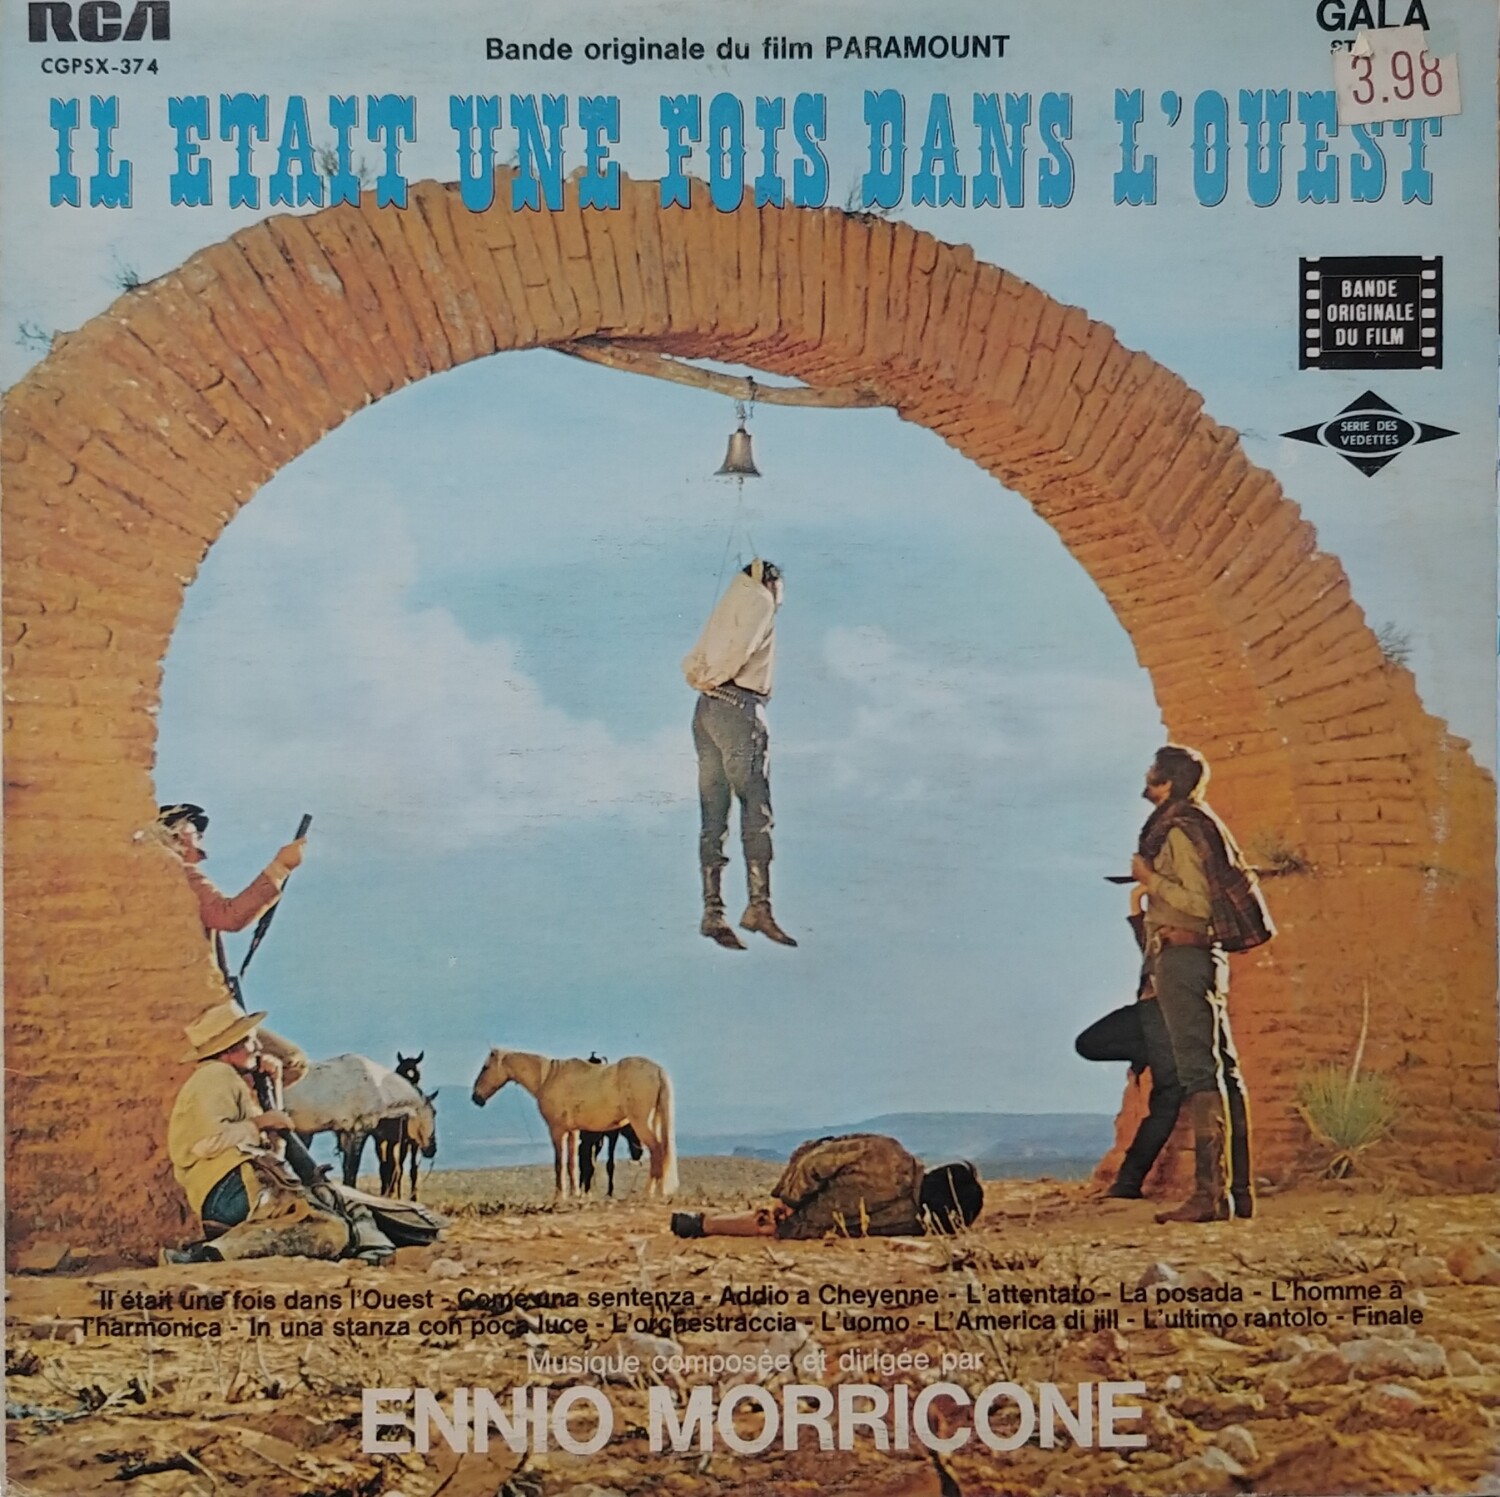 Ennio Morricone - Il etait une fois dans l'ouest